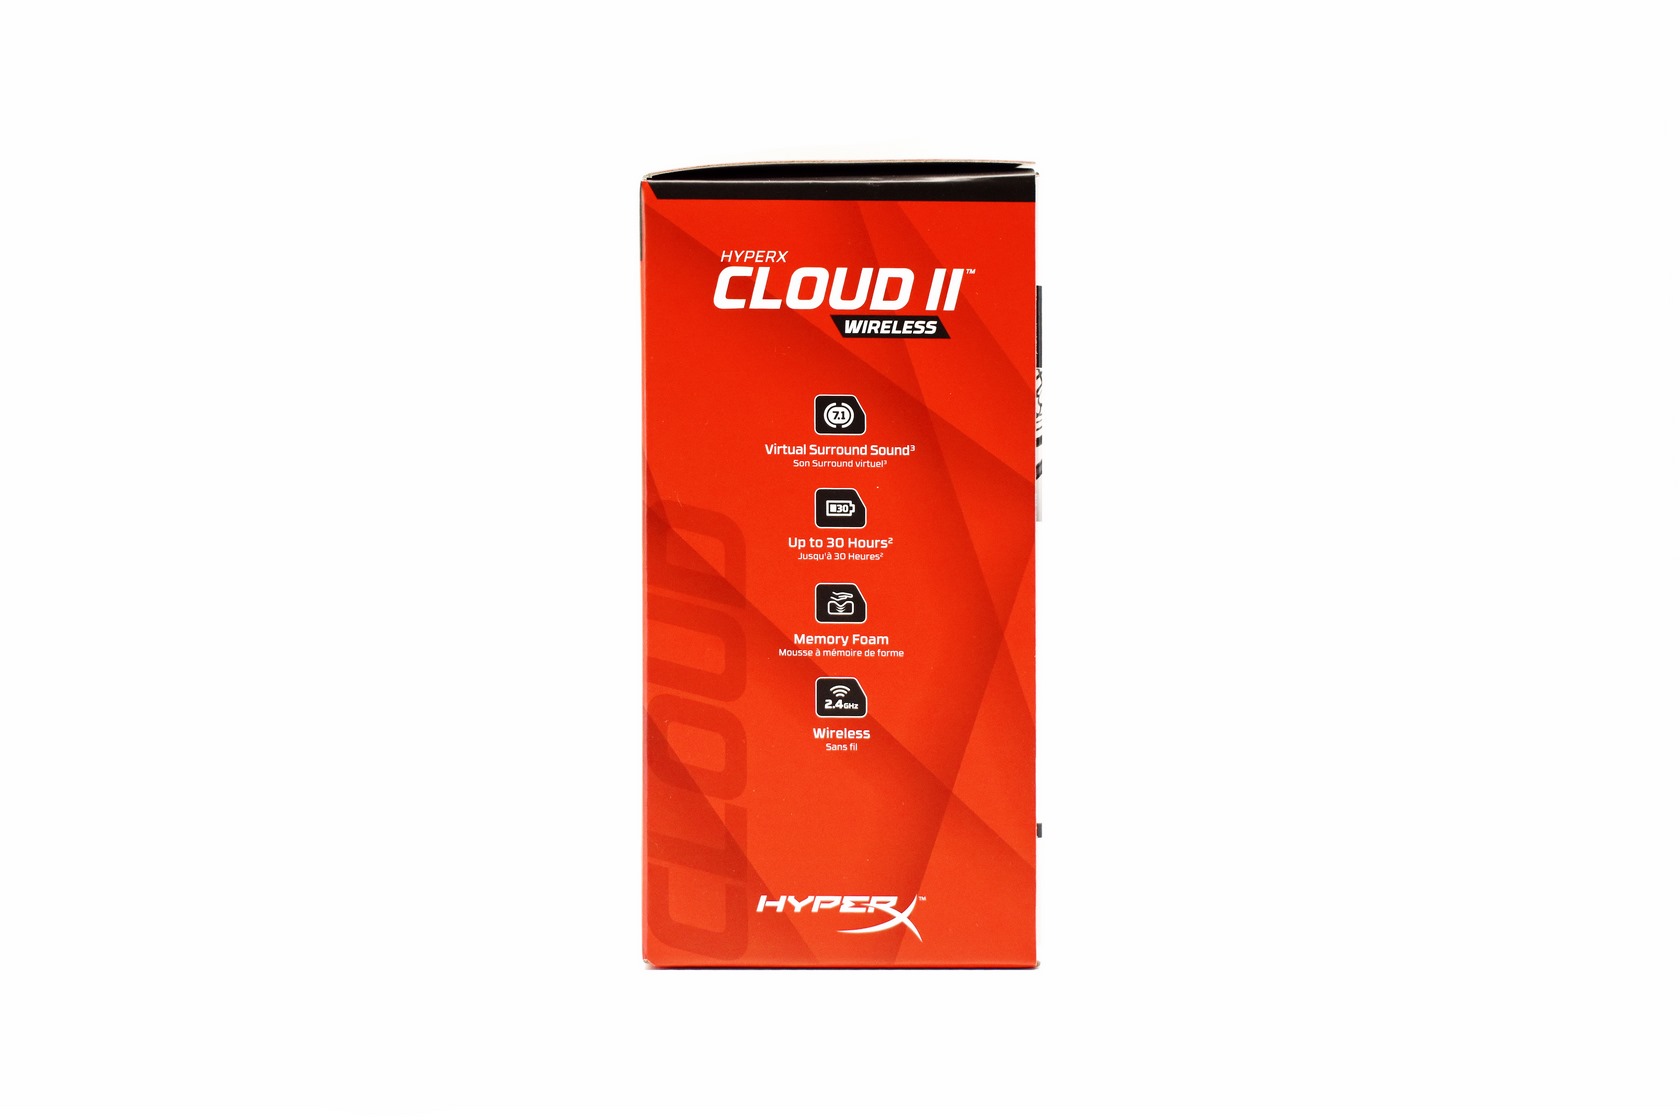 HyperX Cloud II Wireless review